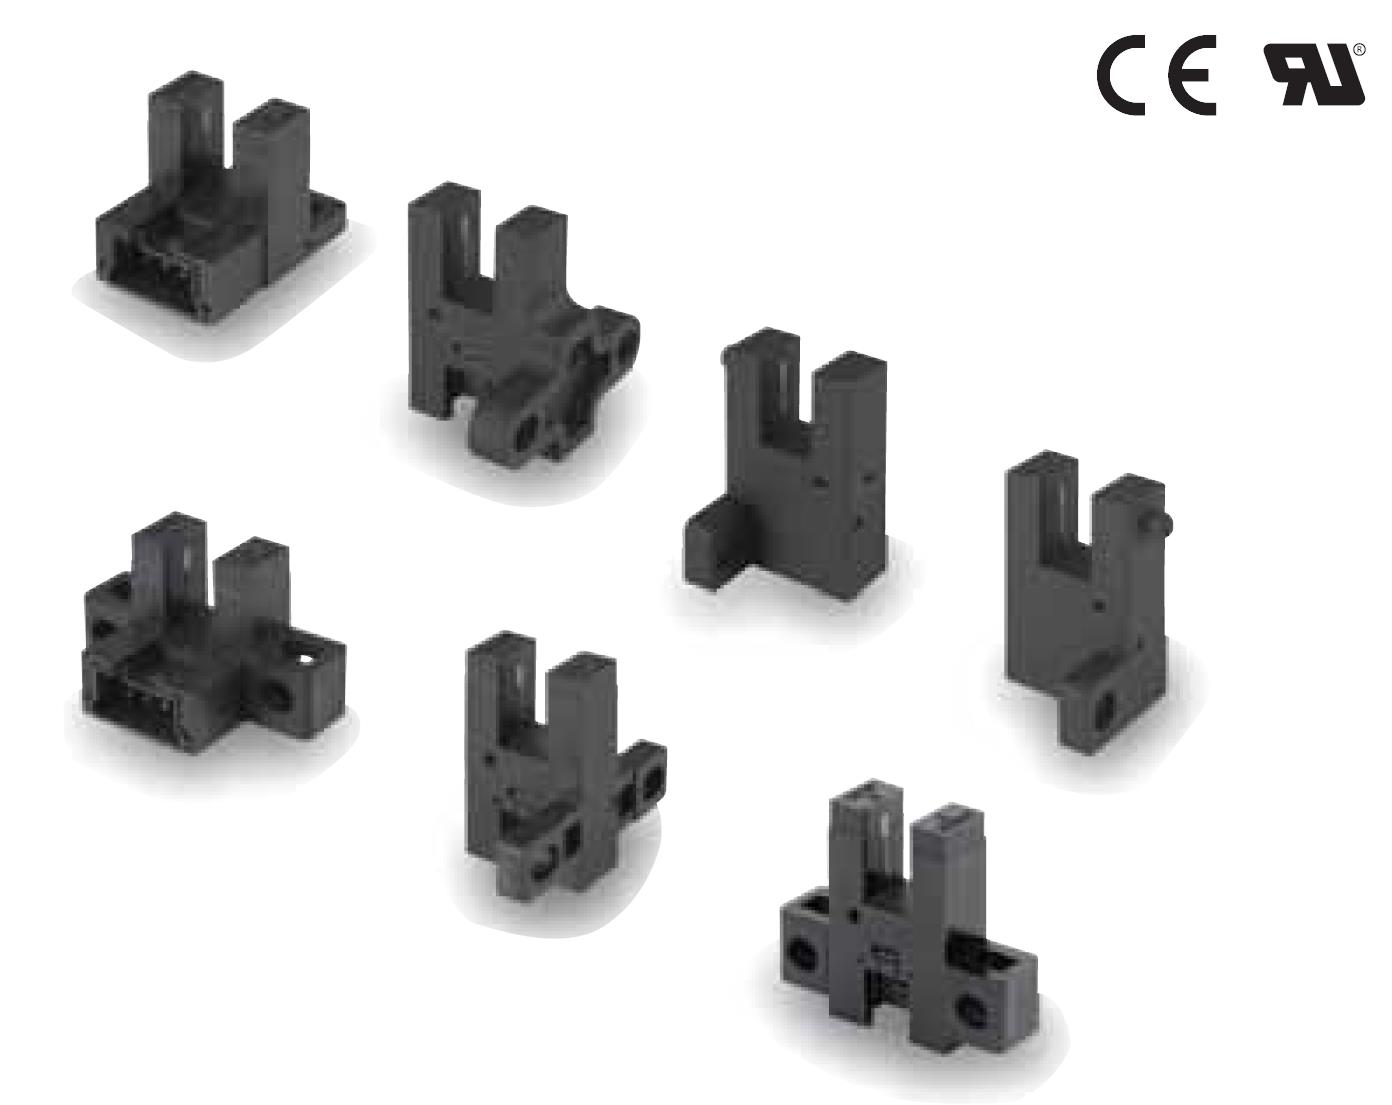 凹槽连接器型光电传感器从小容量到大容量适用多种加热器
EE-SX974-C1